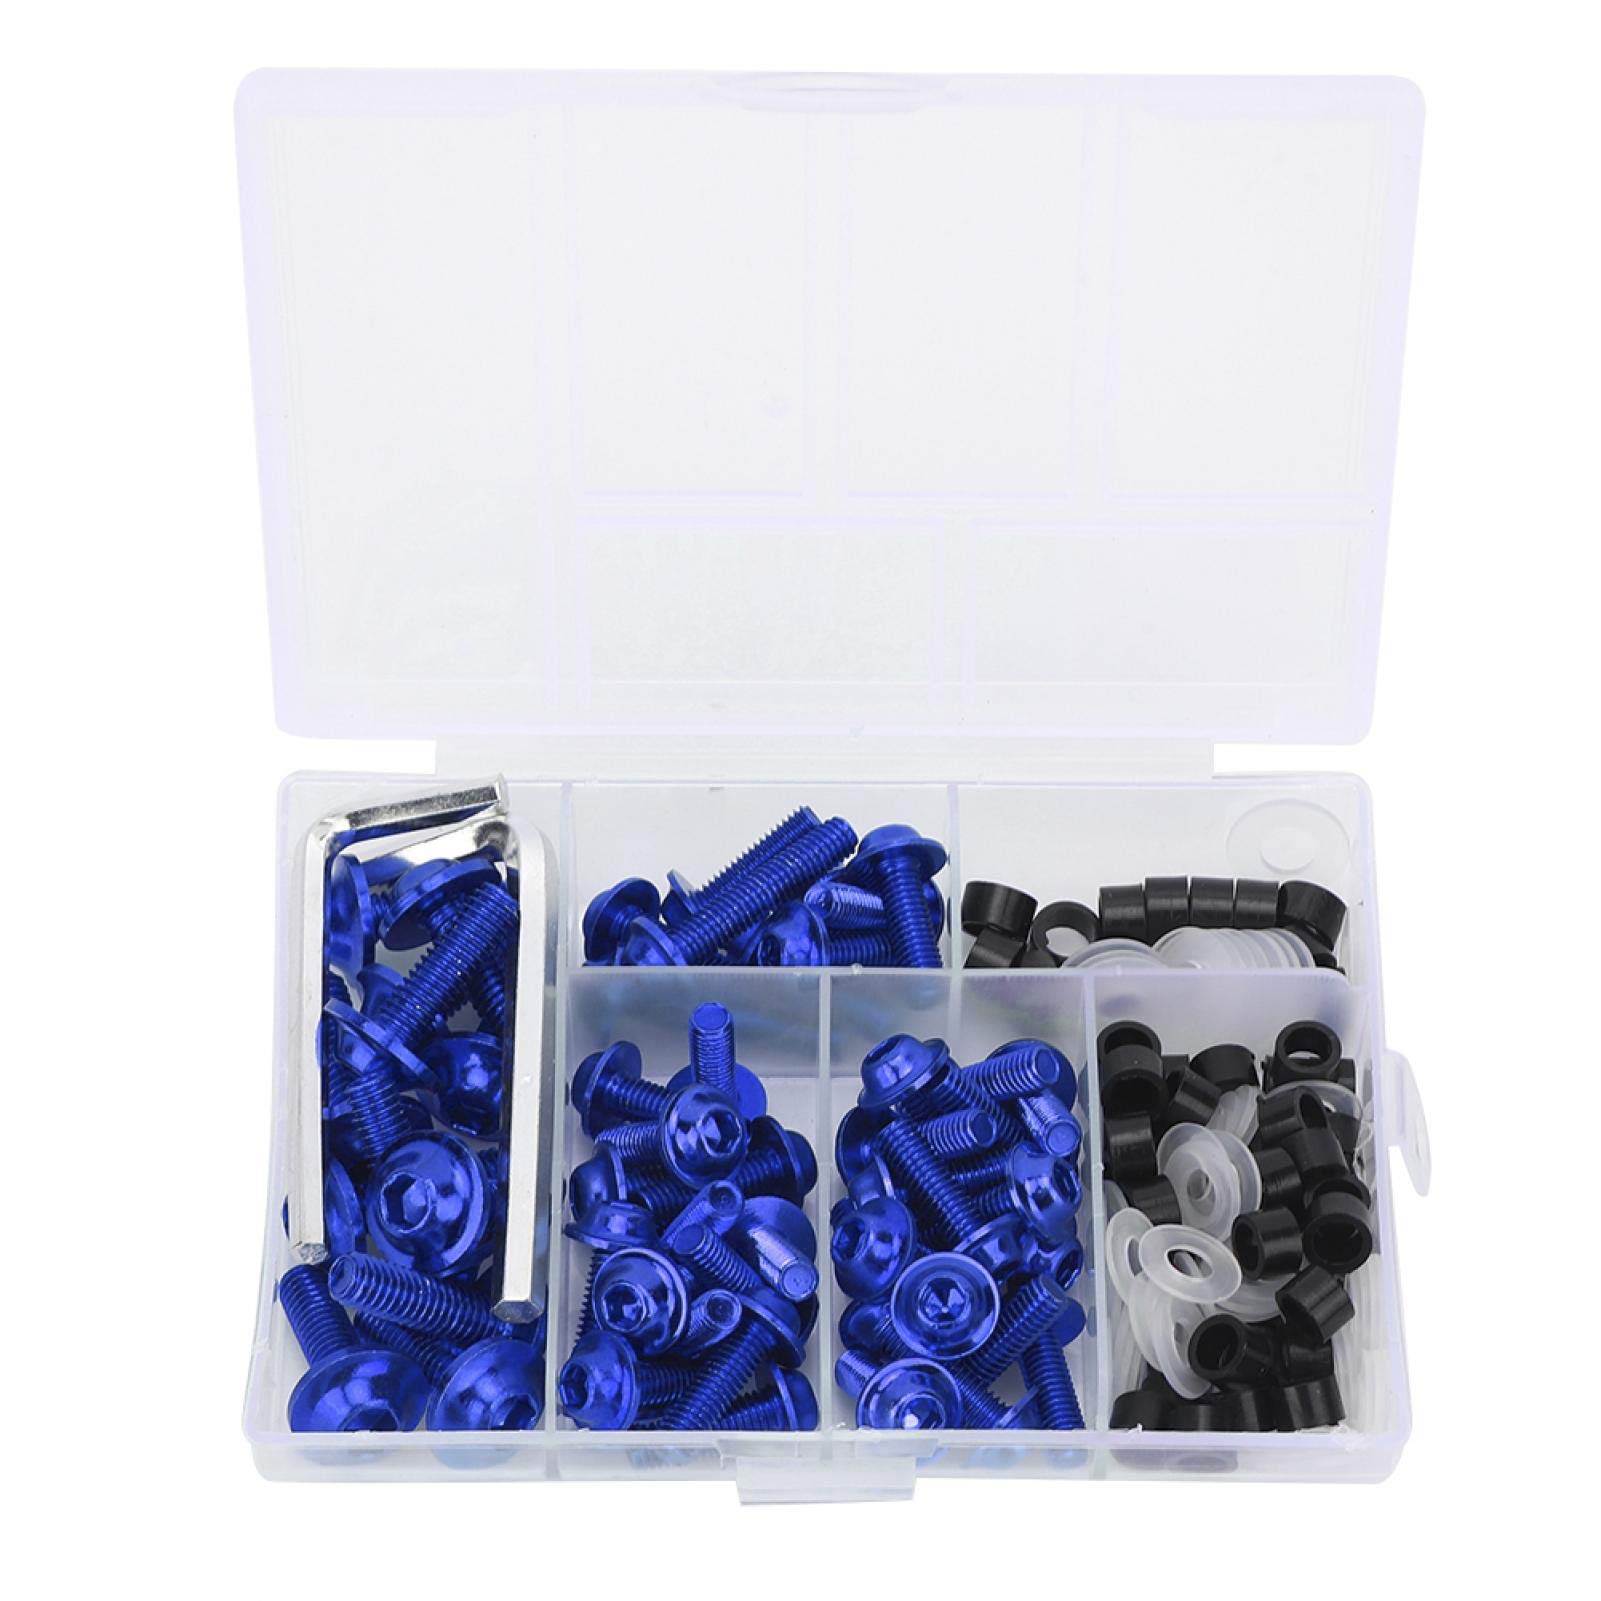 158 Stück Universal Motorrad Verkleidungsschrauben Kit, Aluminium Windschutzscheiben Verkleidungsschrauben Für Motorräder(Blau) von Yuecoom